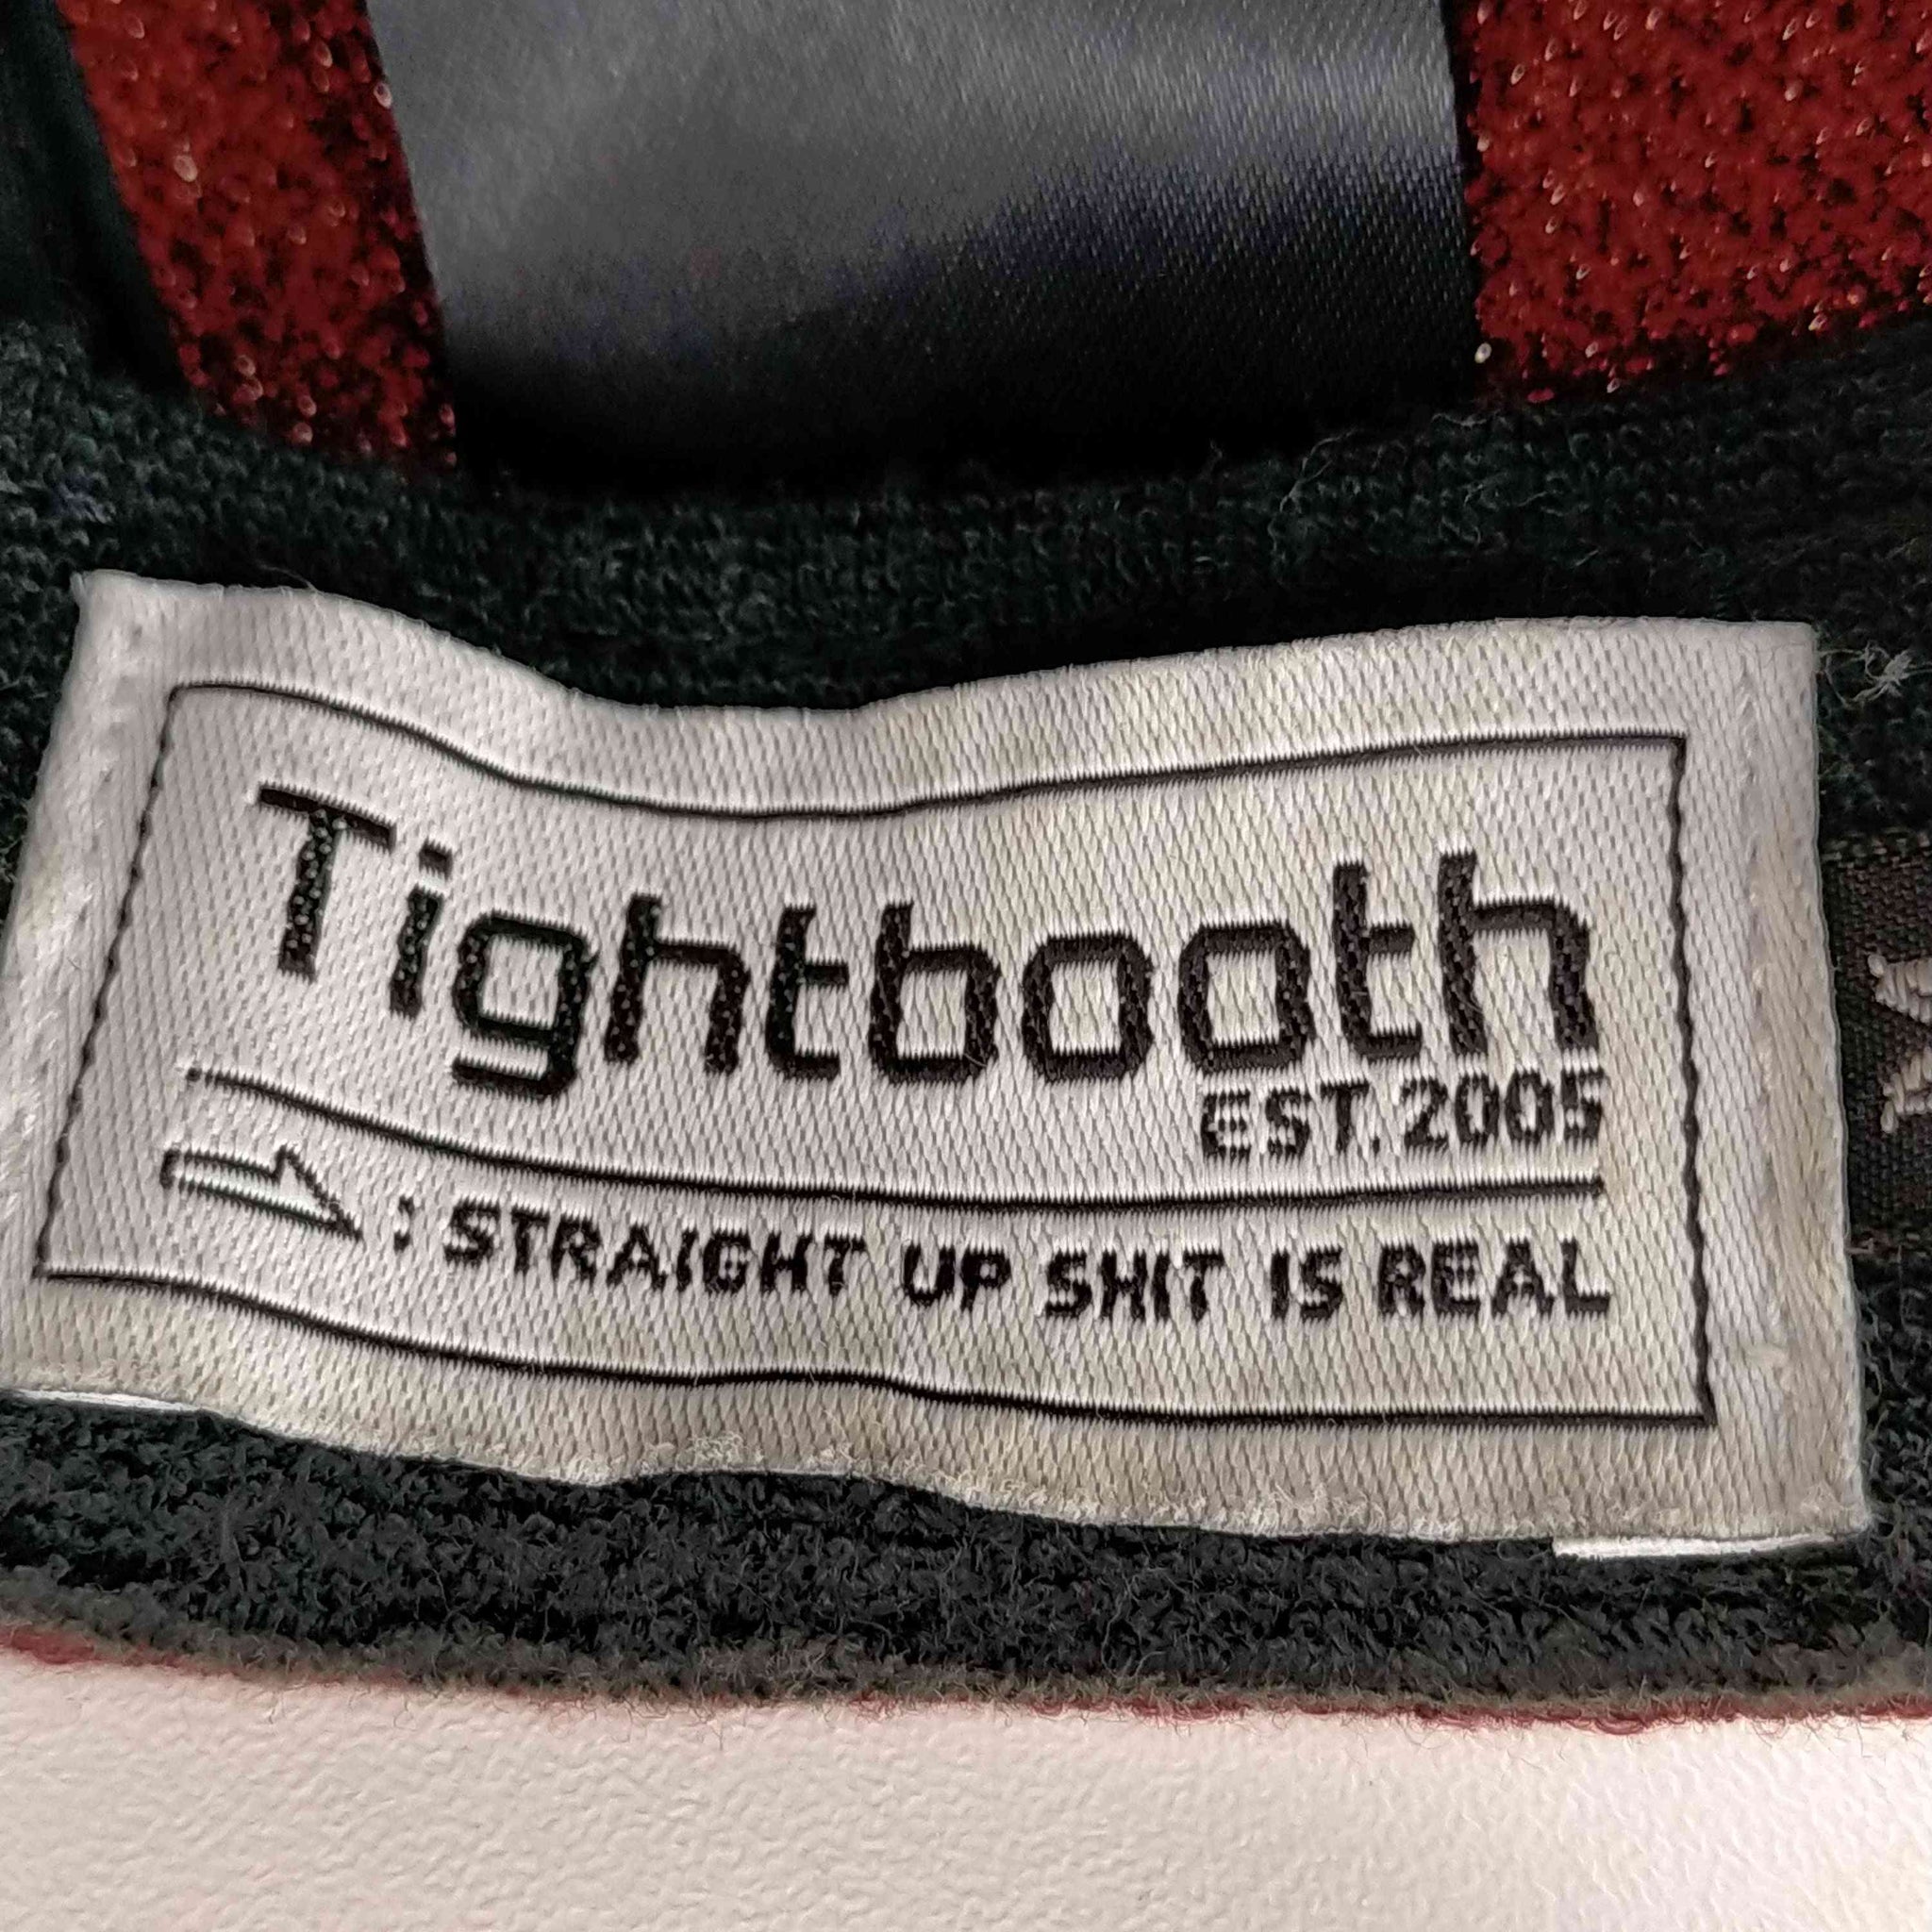 Tightbooth Production(タイトブースプロダクション)ウールバックロゴ刺繍キャスケット